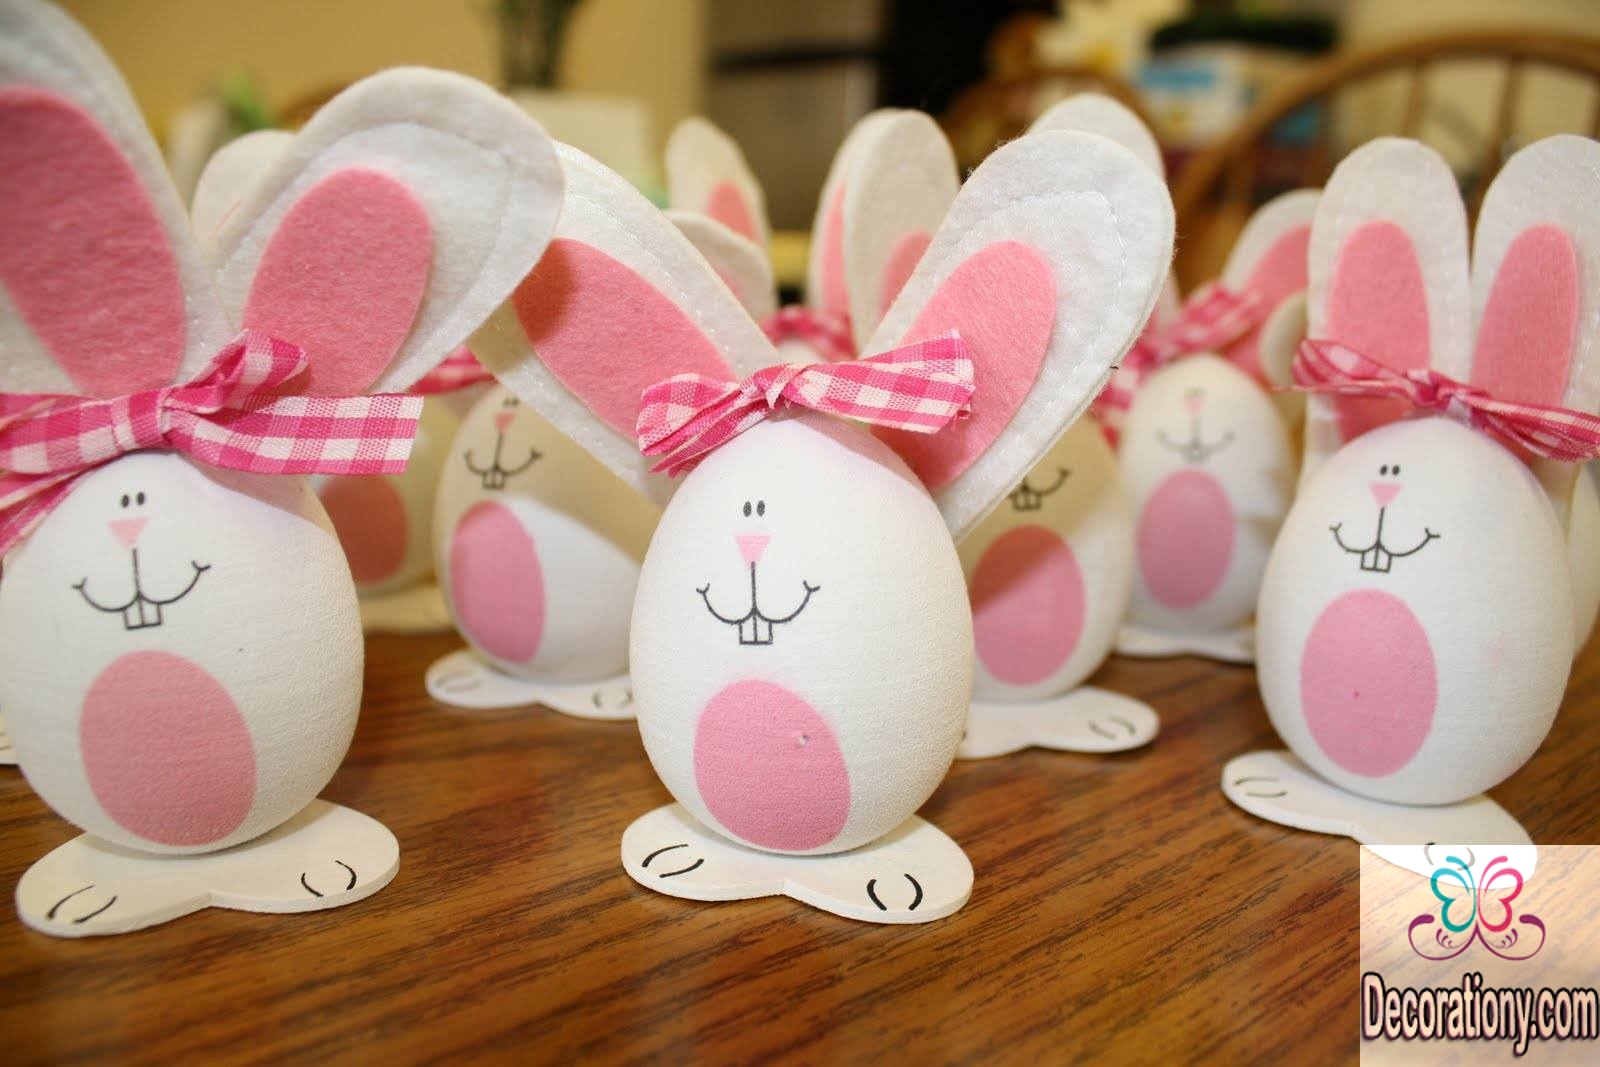 DIY Easter egg decorations